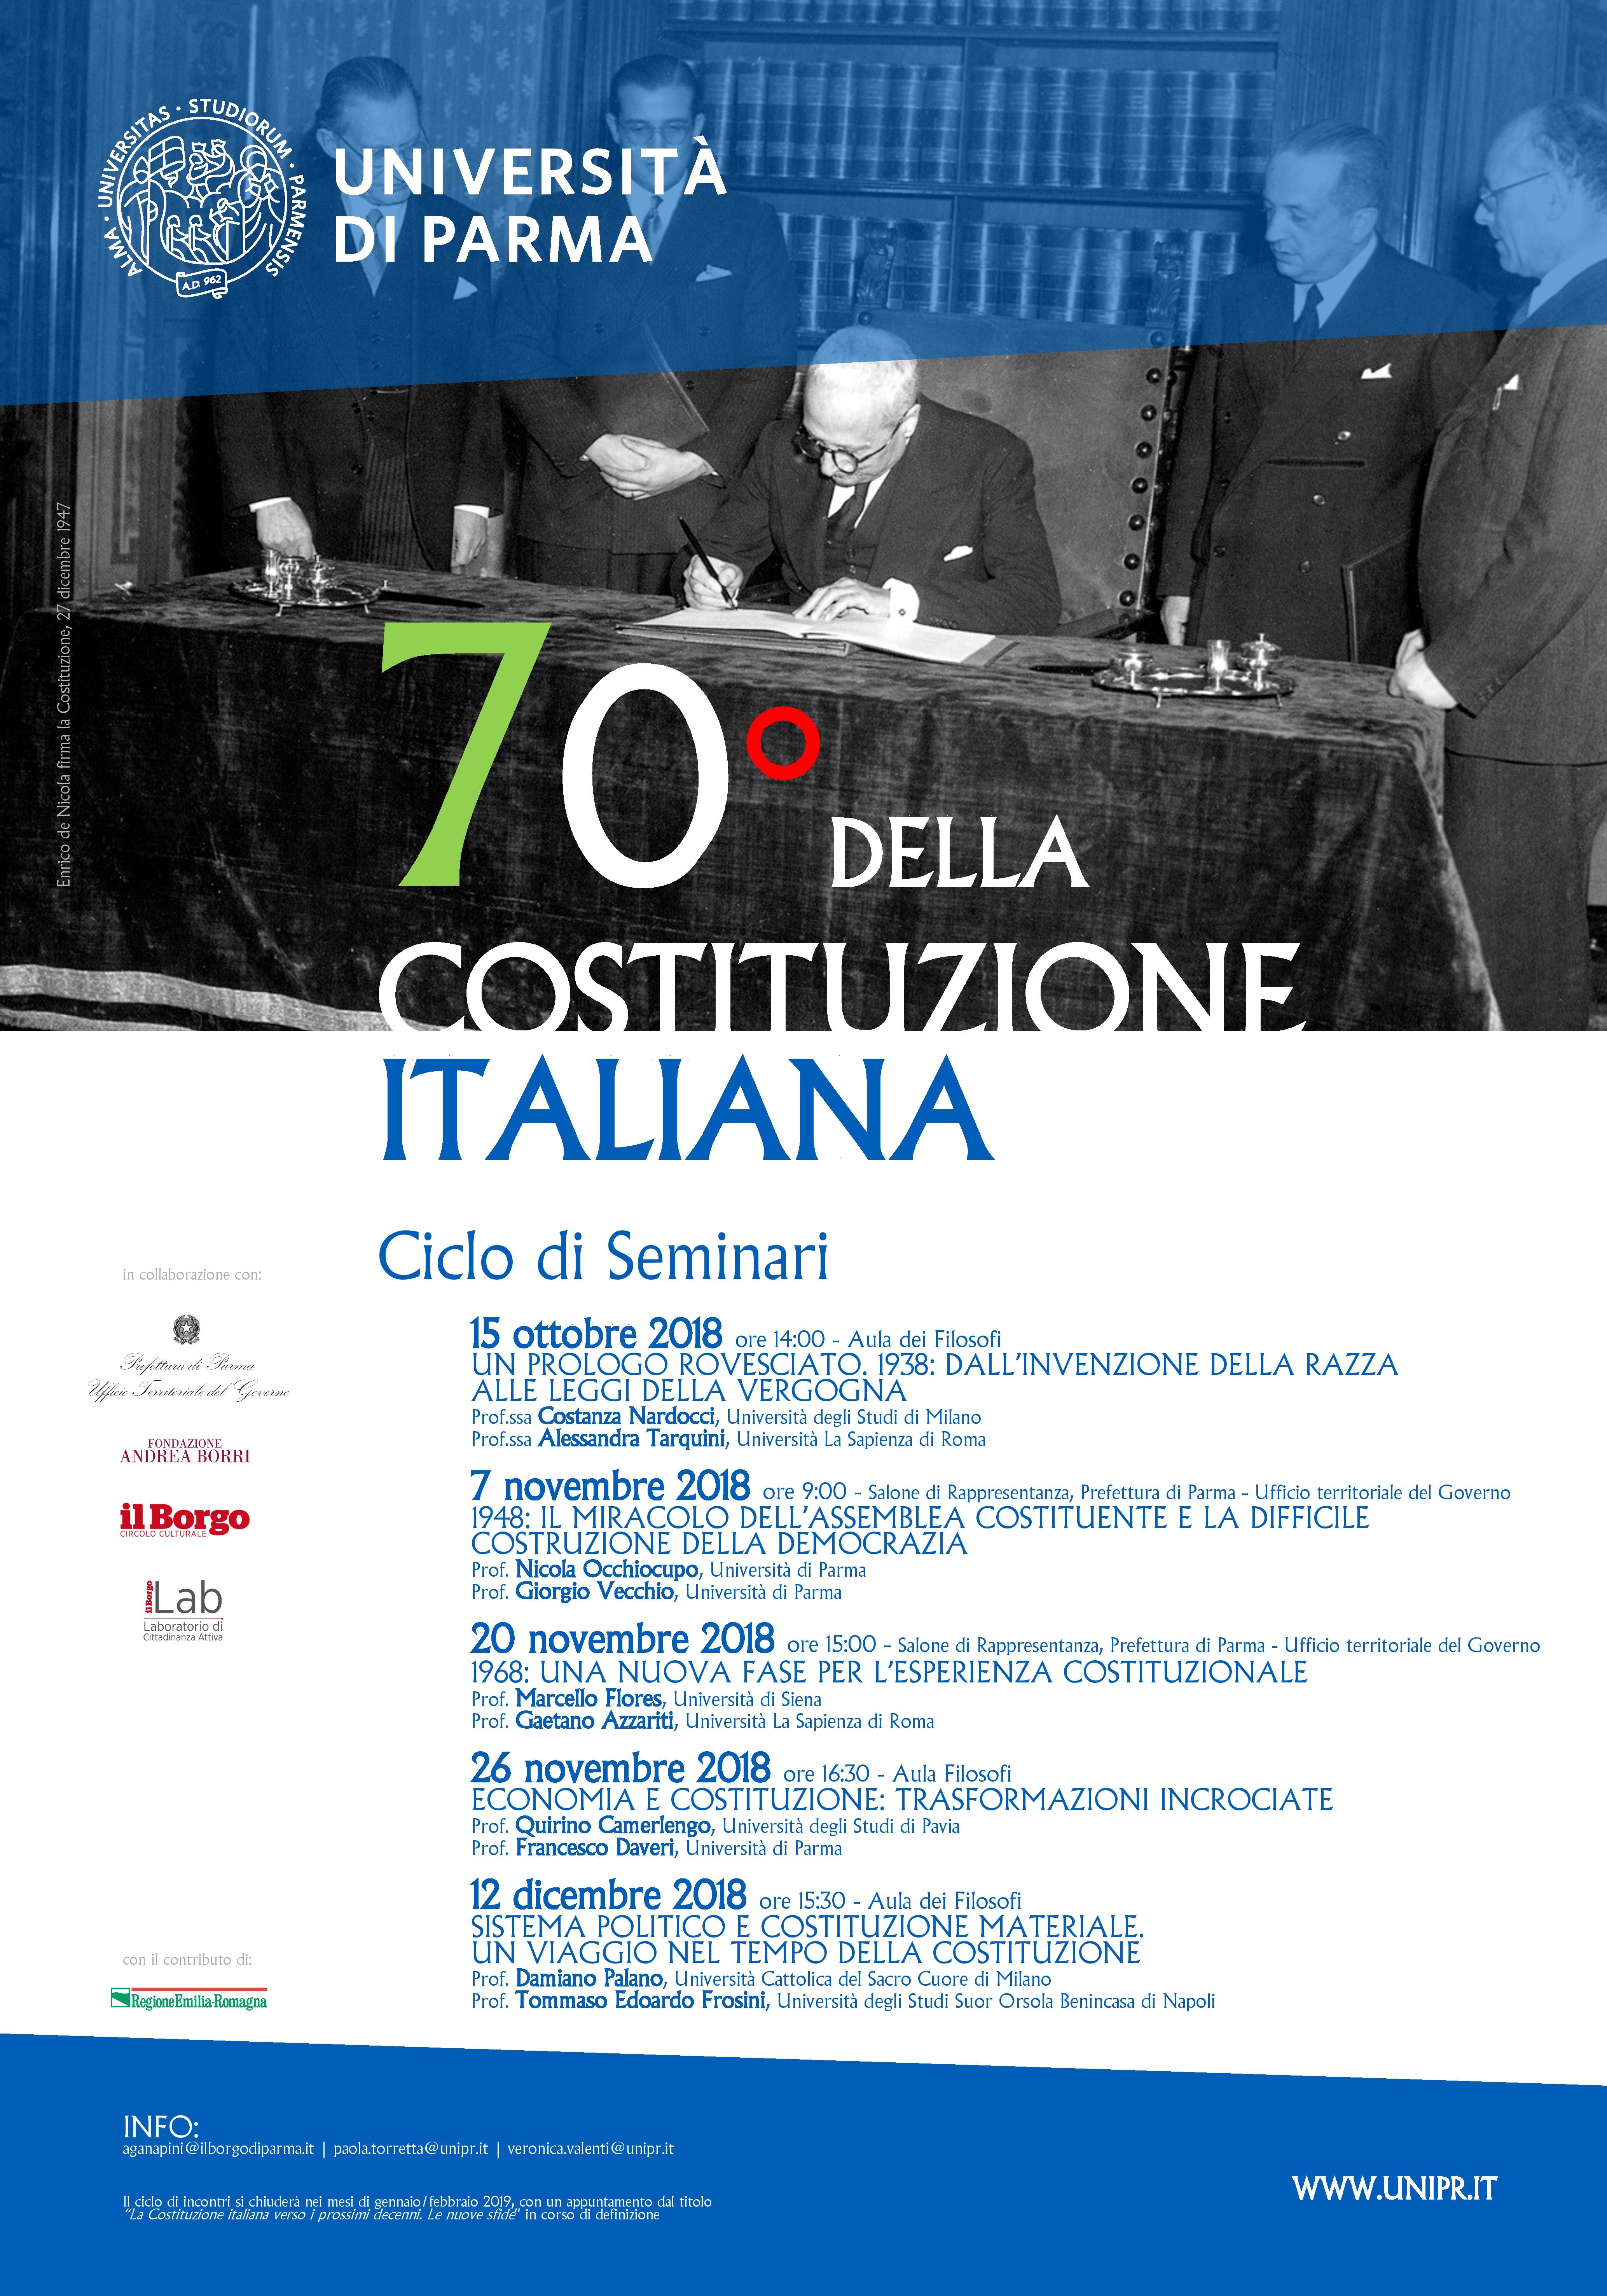 La Costituzione italiana compie 70 anni